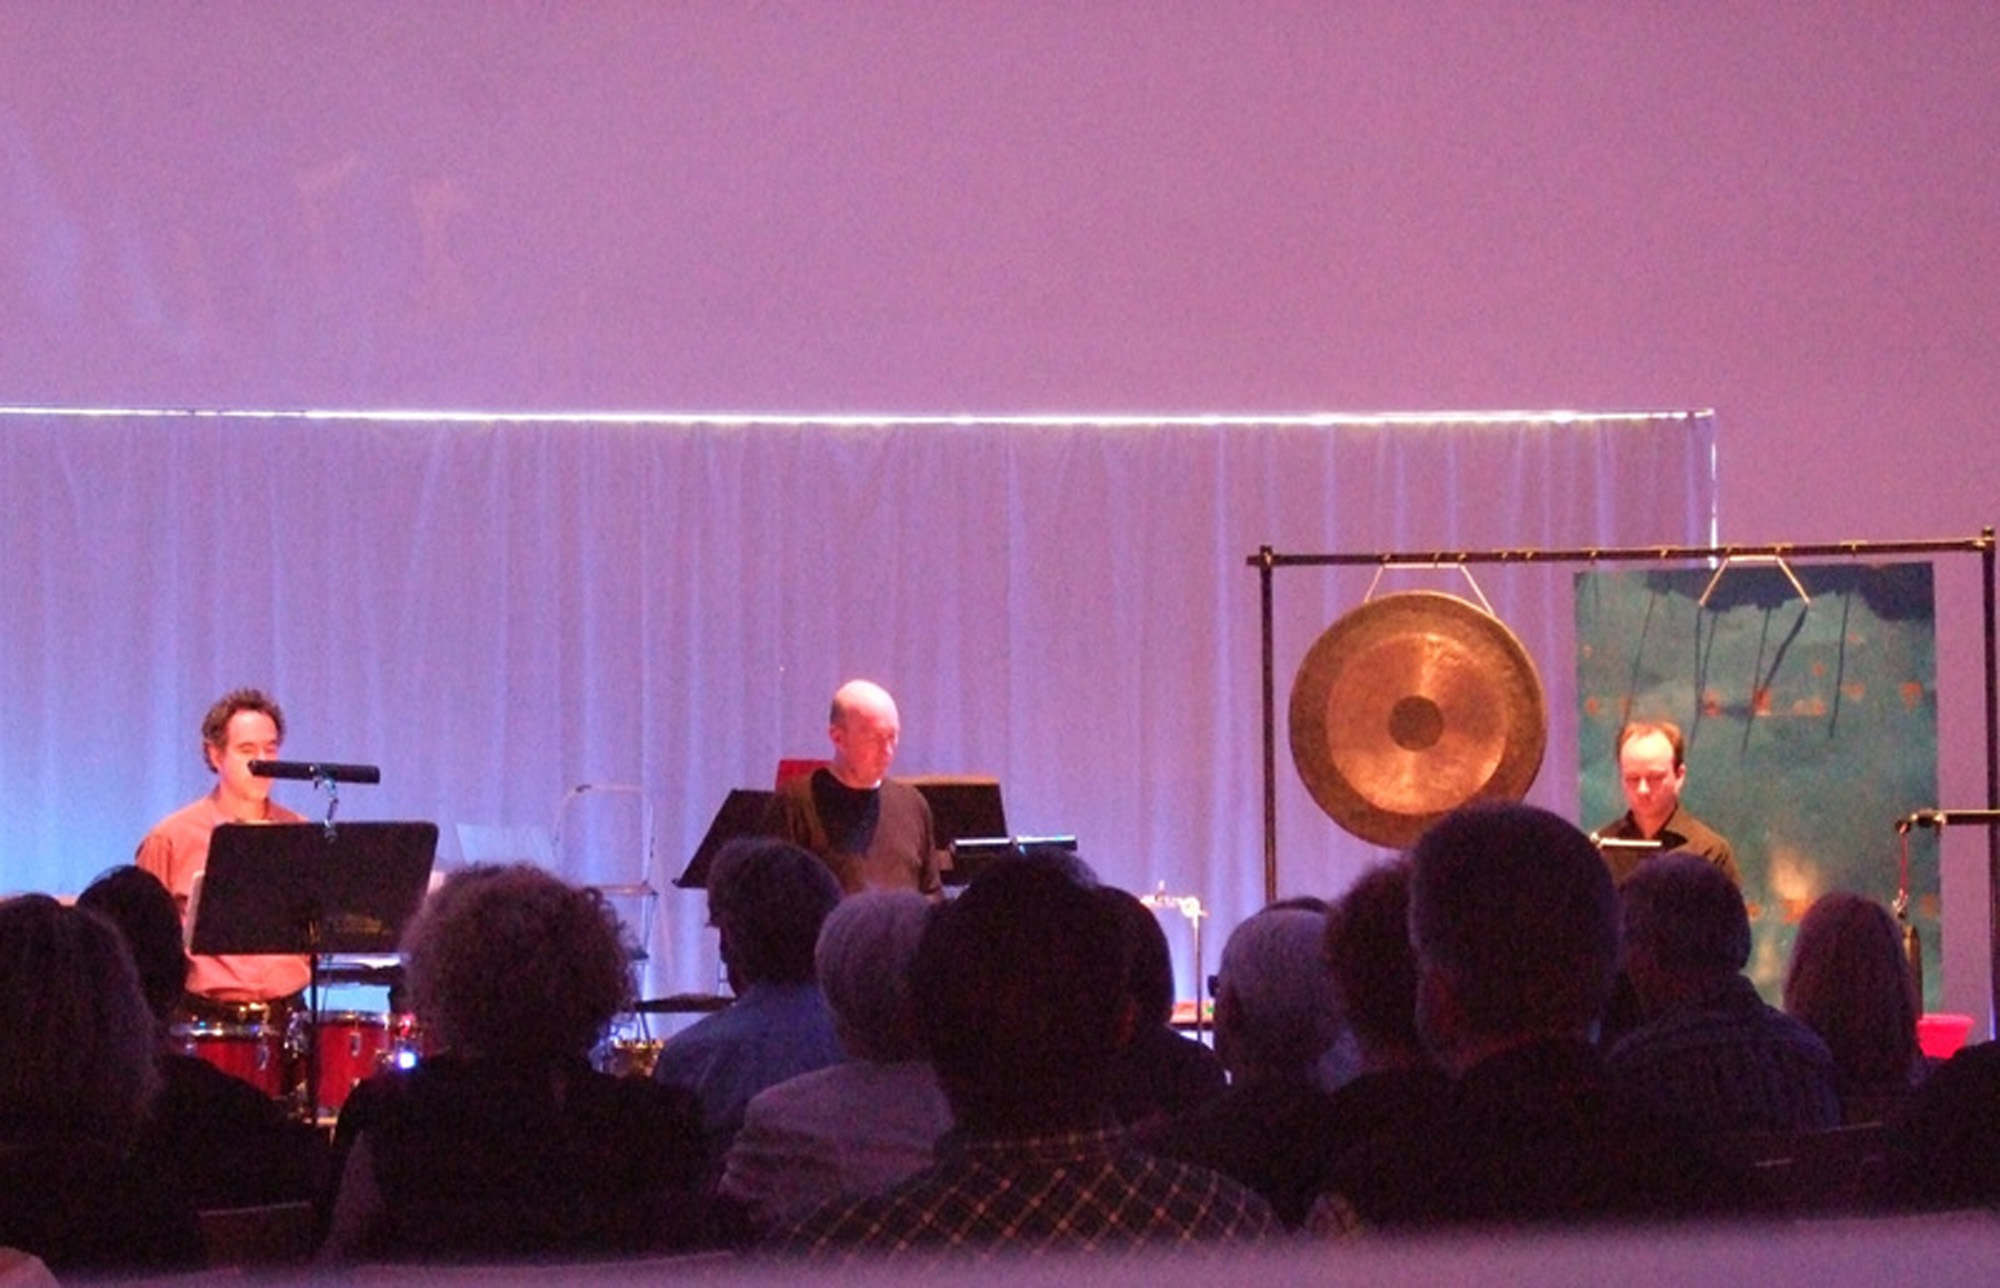 John Cage 100, neue Musik Konzert 2012 im Stadthaussaal. 3 Musiker auf der Bühne